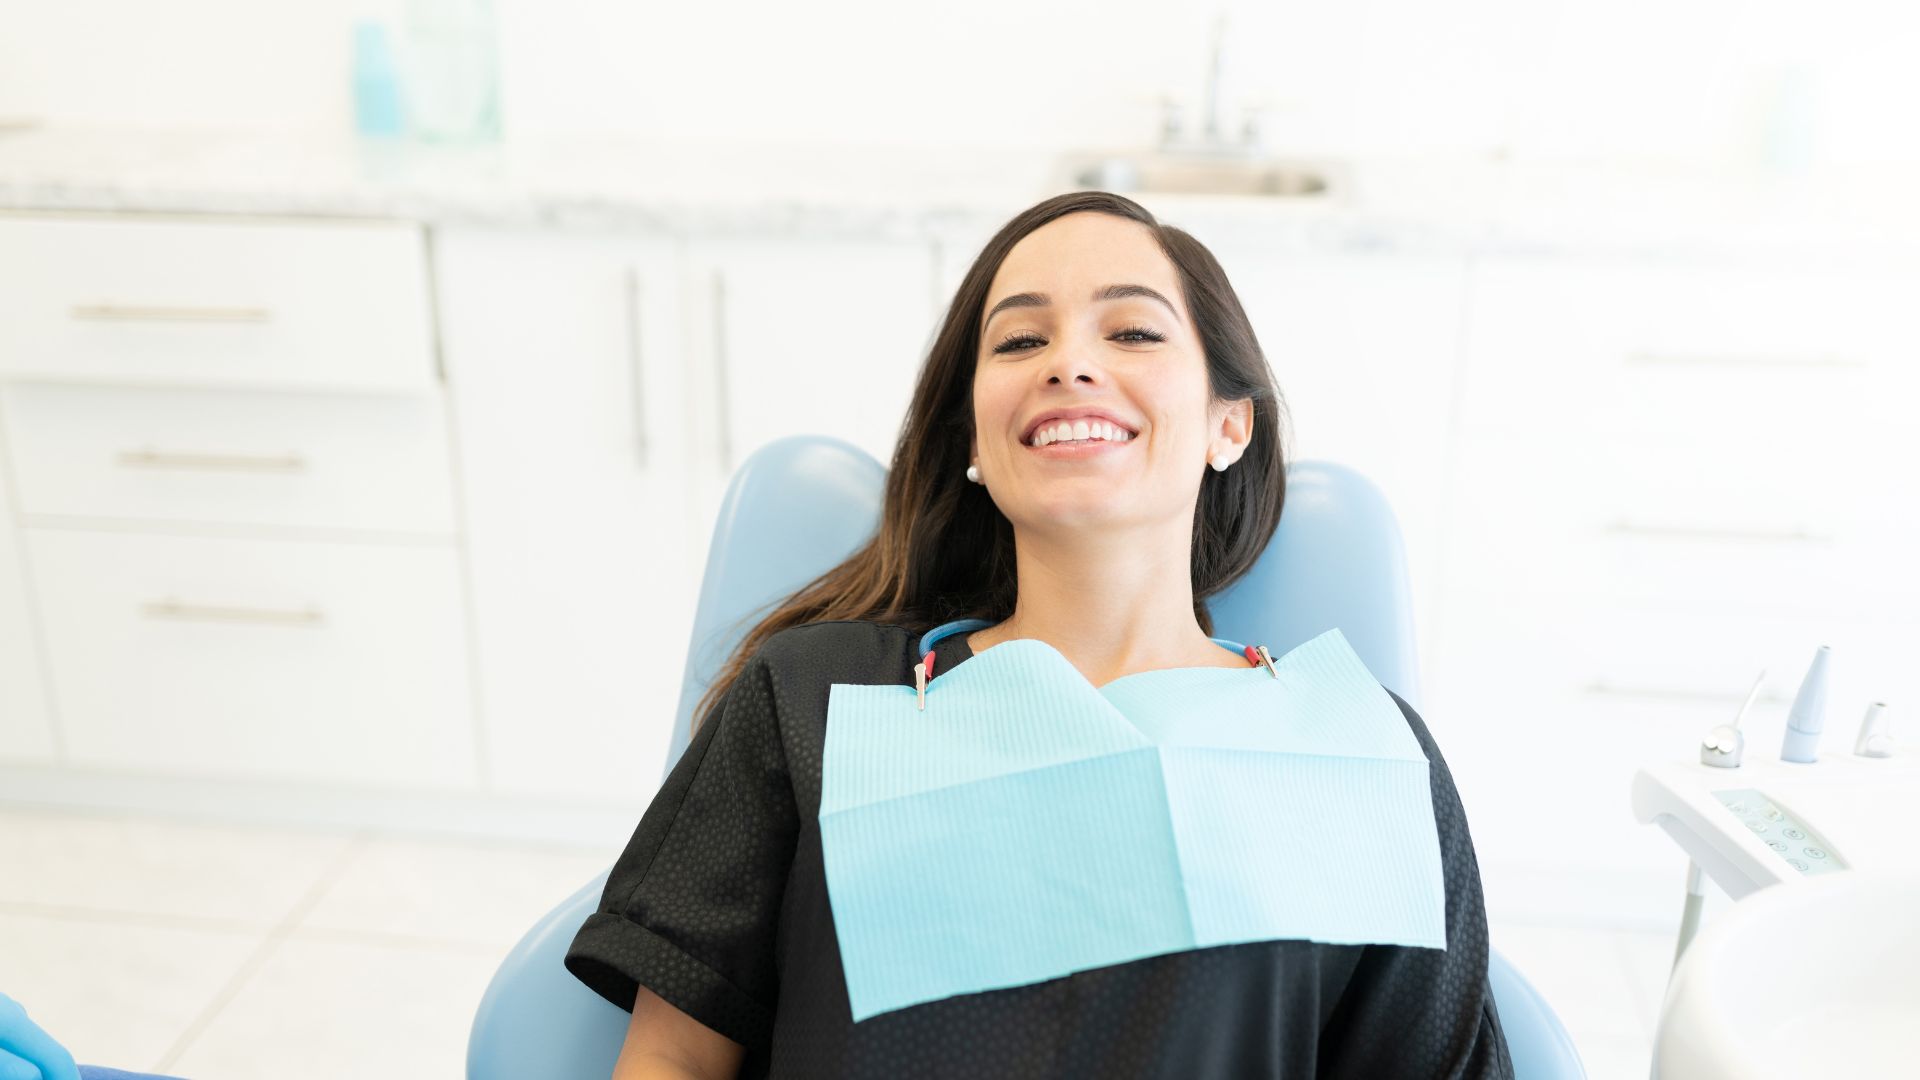 clinica dental valencia